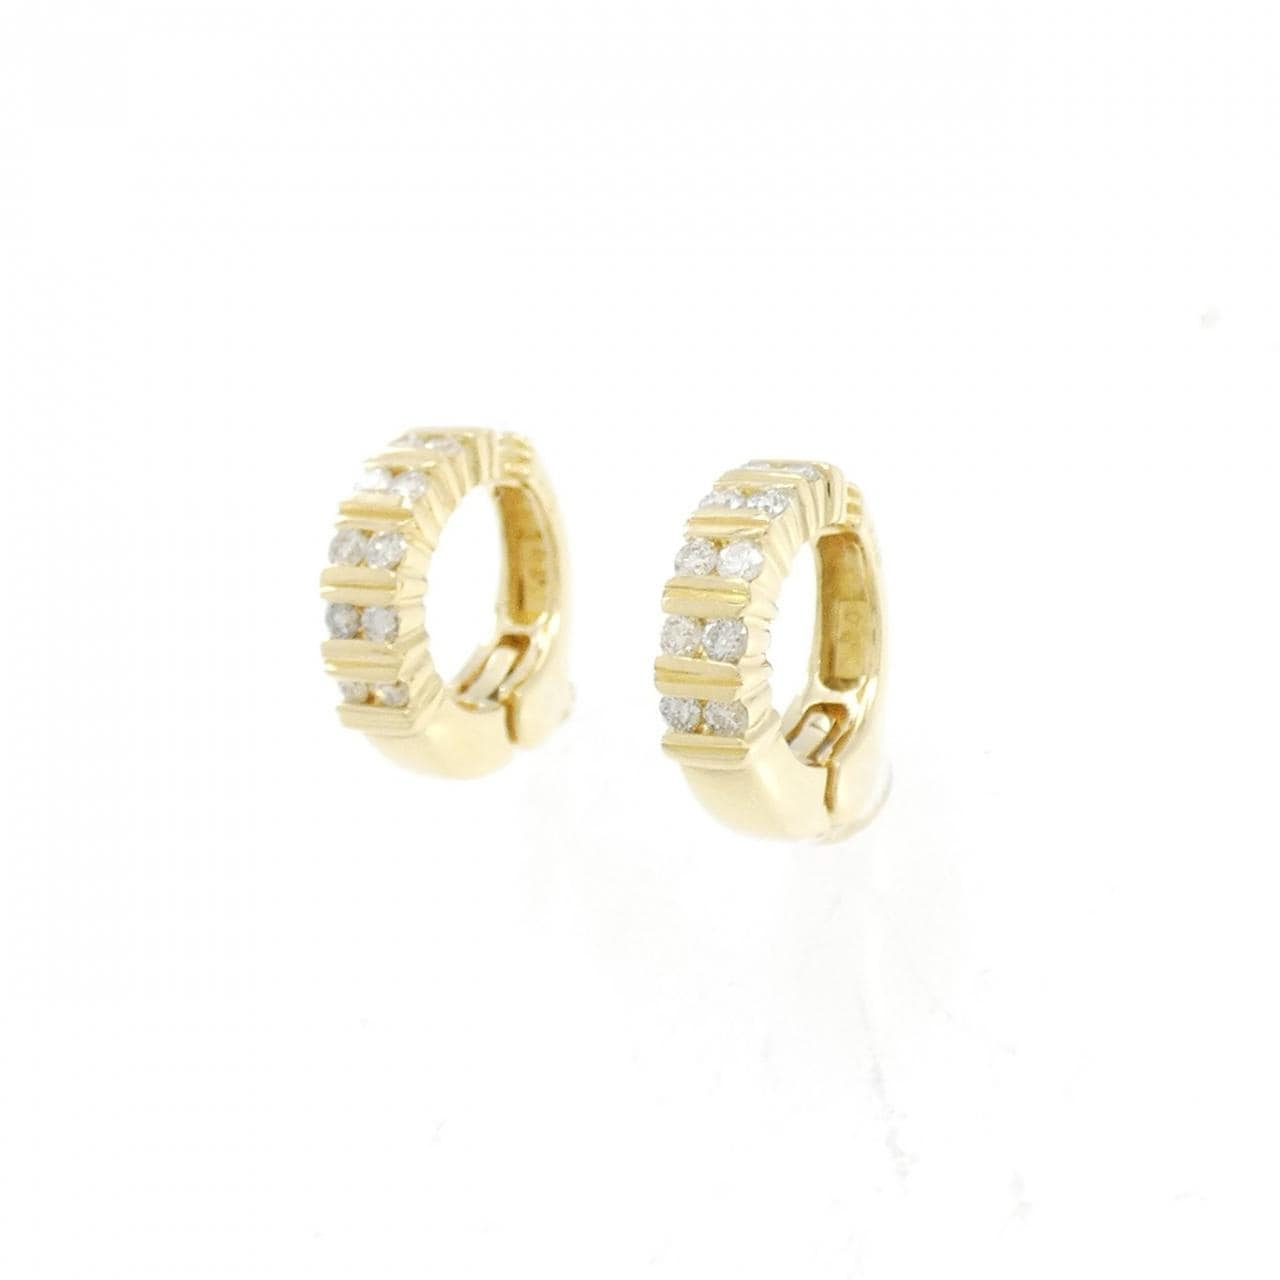 K18YG Diamond Earrings 0.28CT